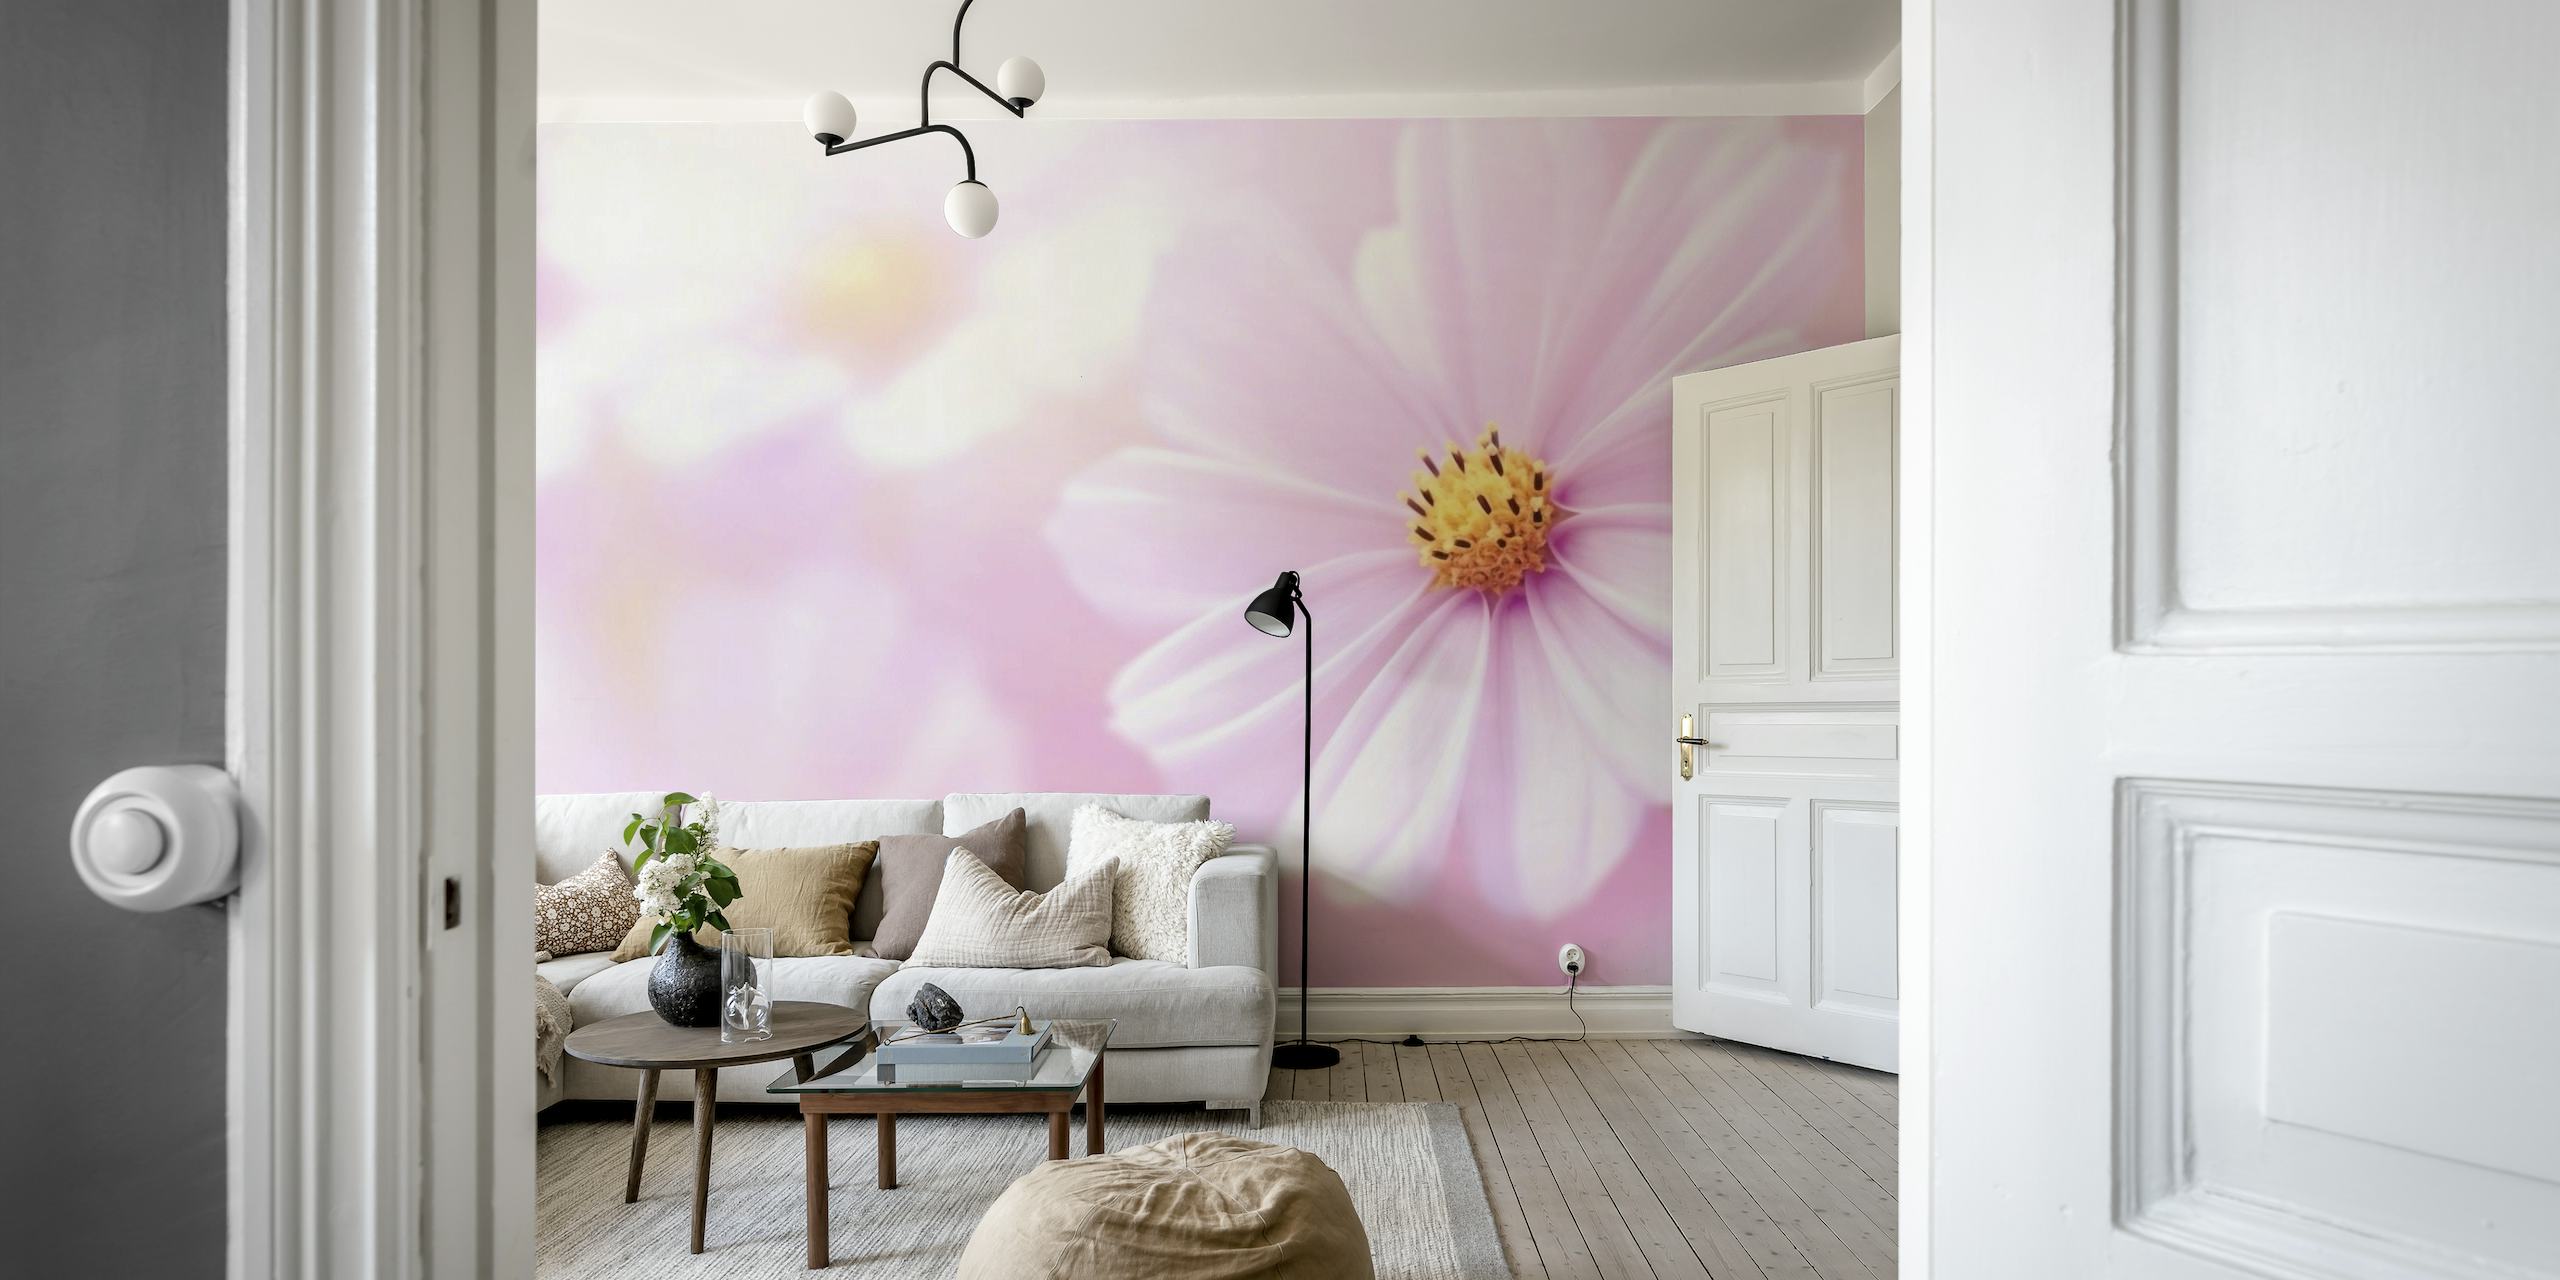 Primer plano de una flor rosa que representa el mural de pared 'Hermoso día de verano' en happywall.com